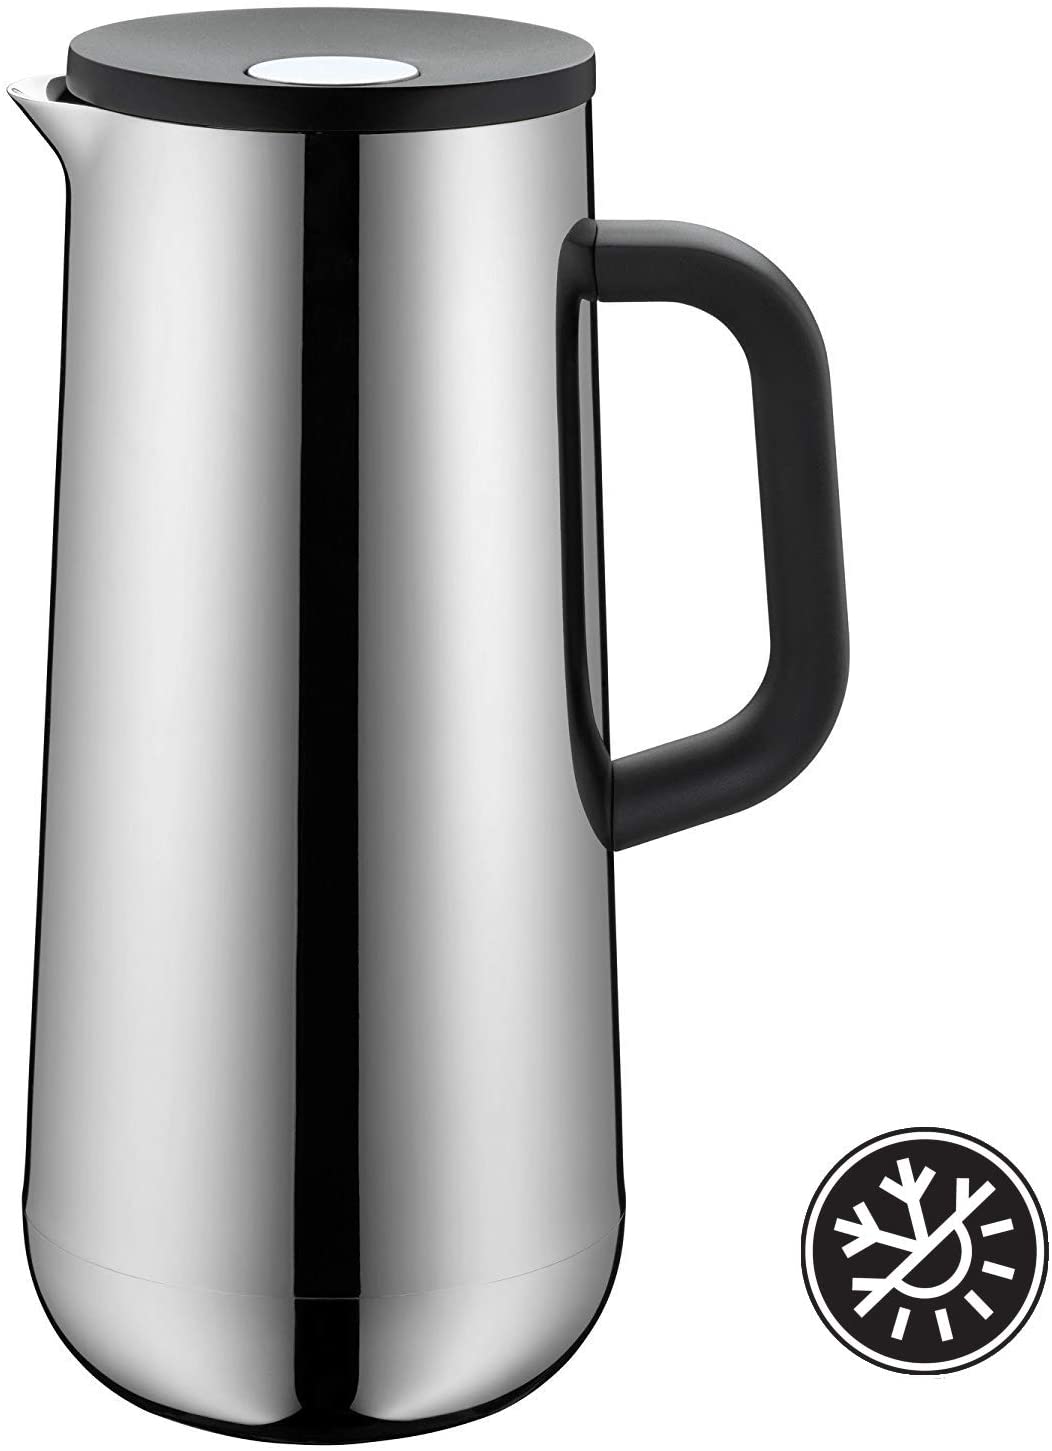 Wmf Impulse Stainless Steel Vacuum Flask Coffee Tea 1 L, Height 28.5 Cm Gla